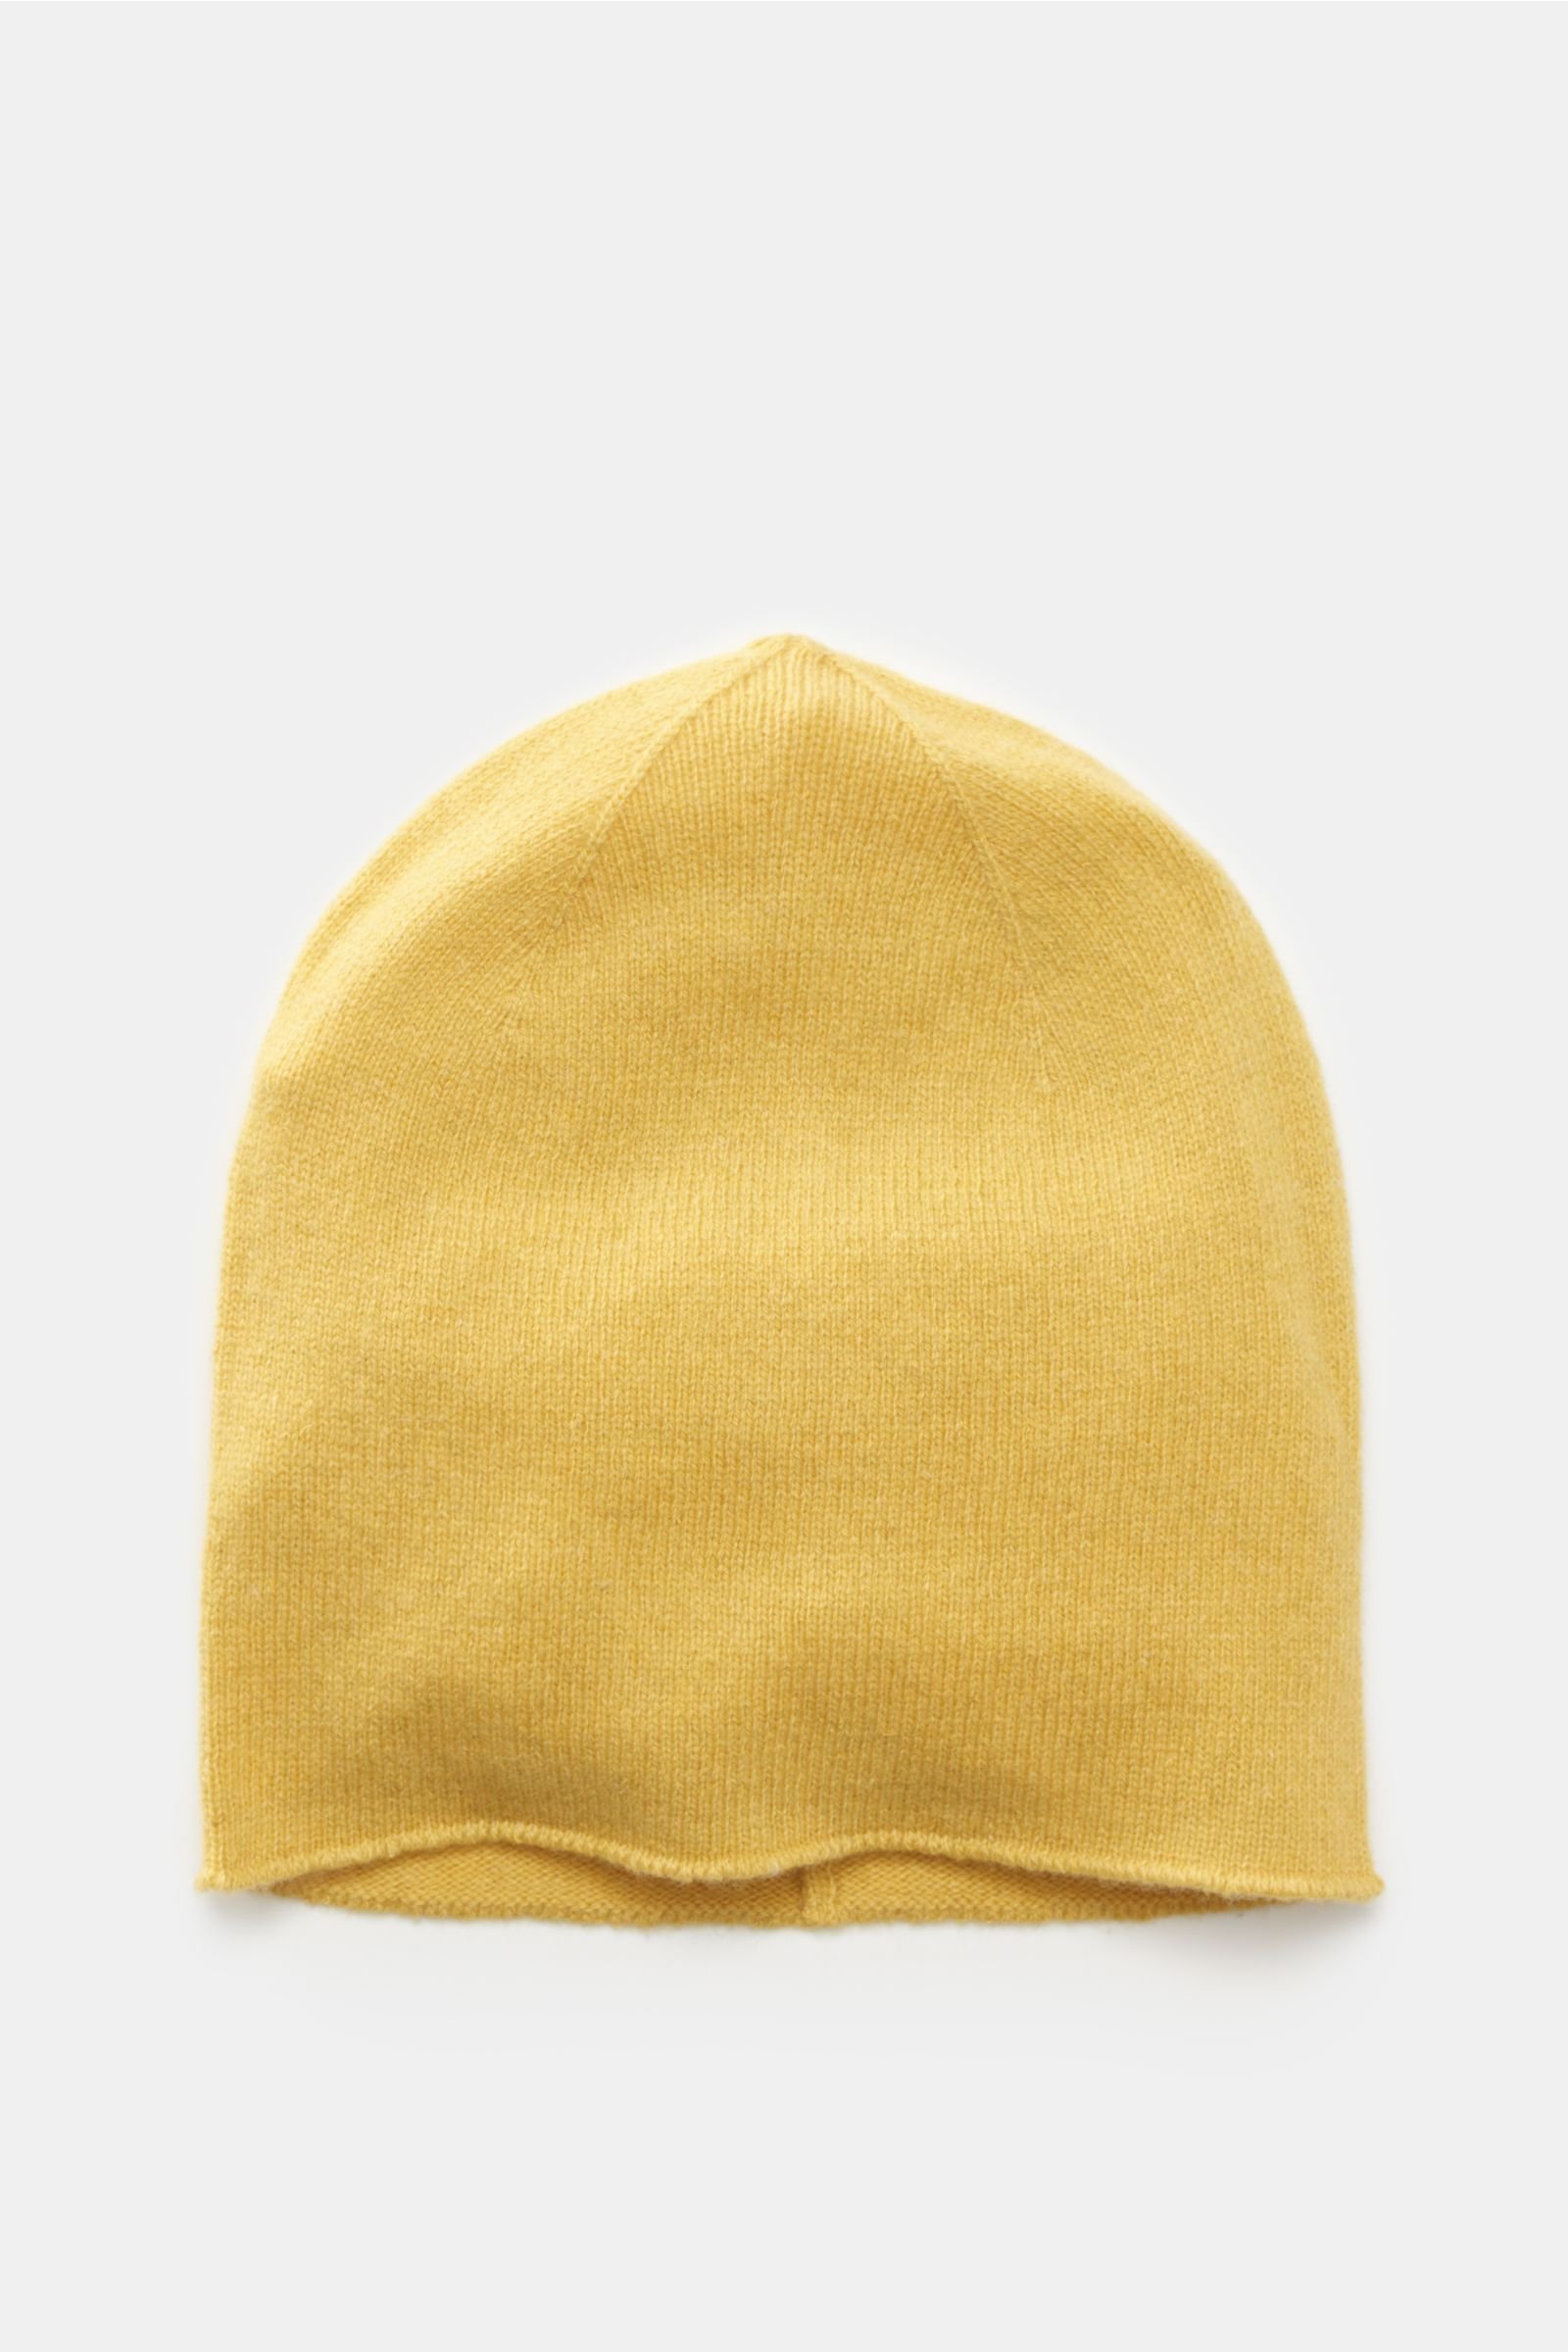 Cashmere Mütze gelb